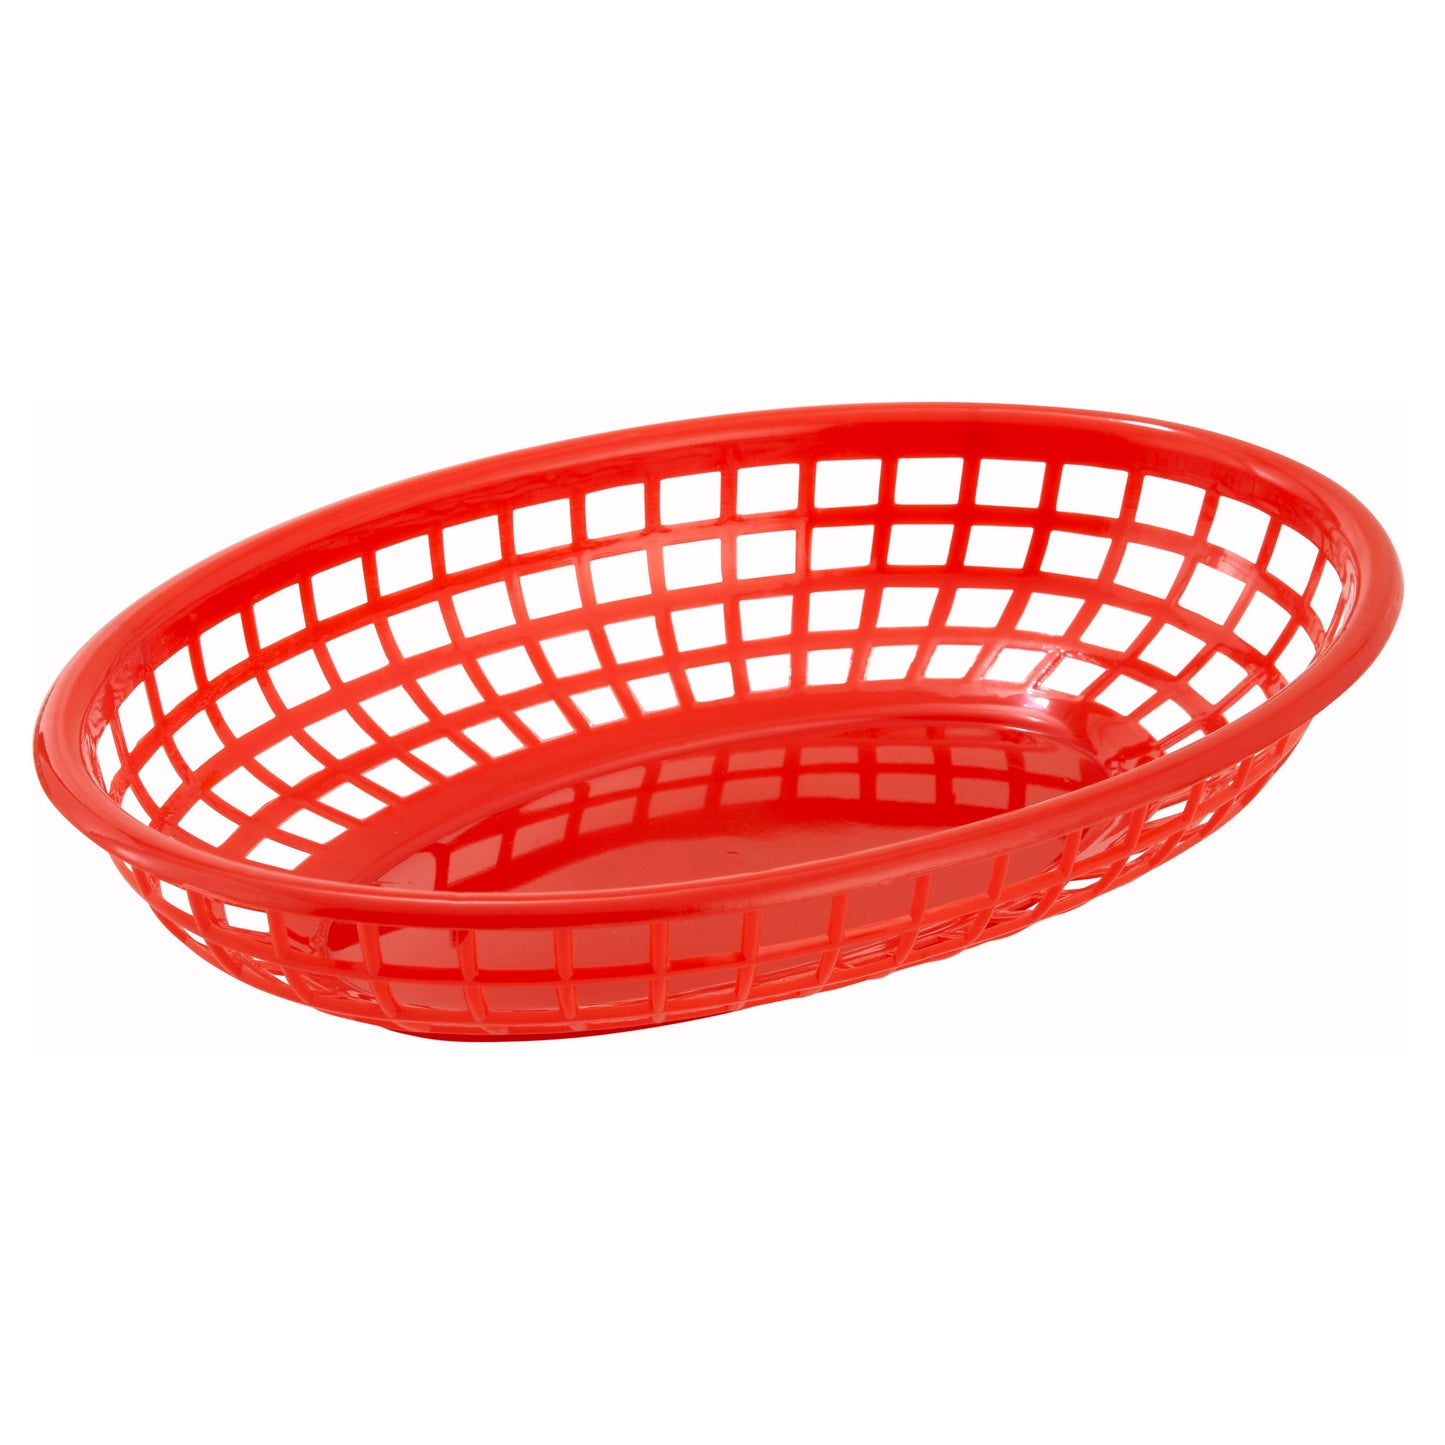 PFB-10R - Oval Fast Food Basket, 9-1/2" x 5" x 2" - Red